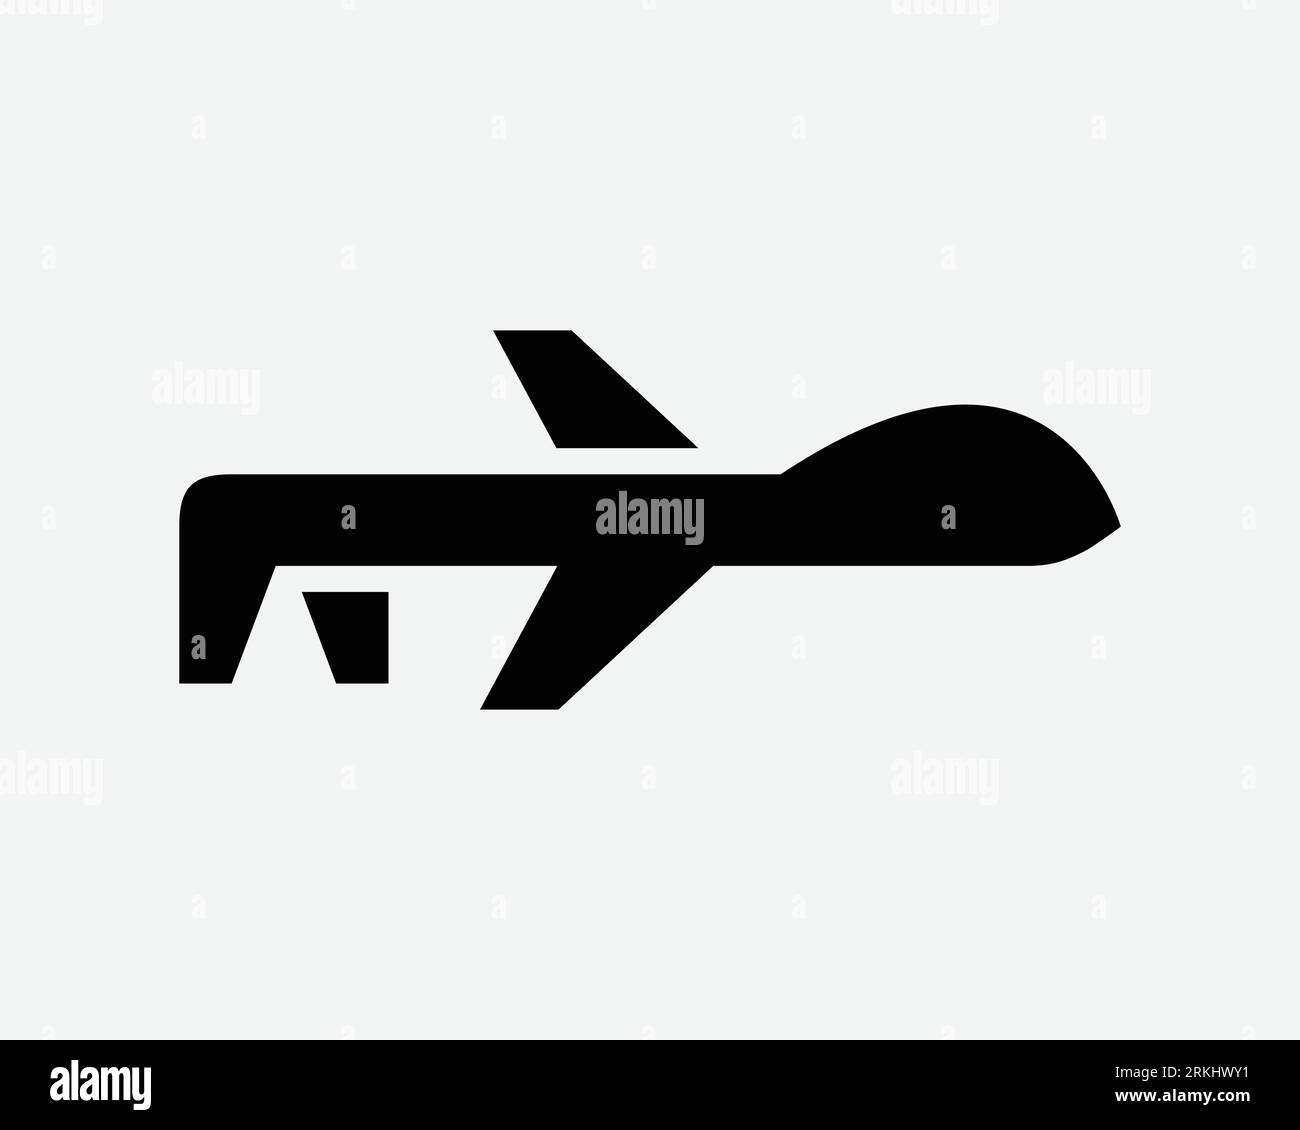 Military Drone Icon Remote Spy plane Aircraft War Airplane robot Noir blanc contour forme vecteur Clipart Illustration graphique Illustration graphique symbole signe Illustration de Vecteur